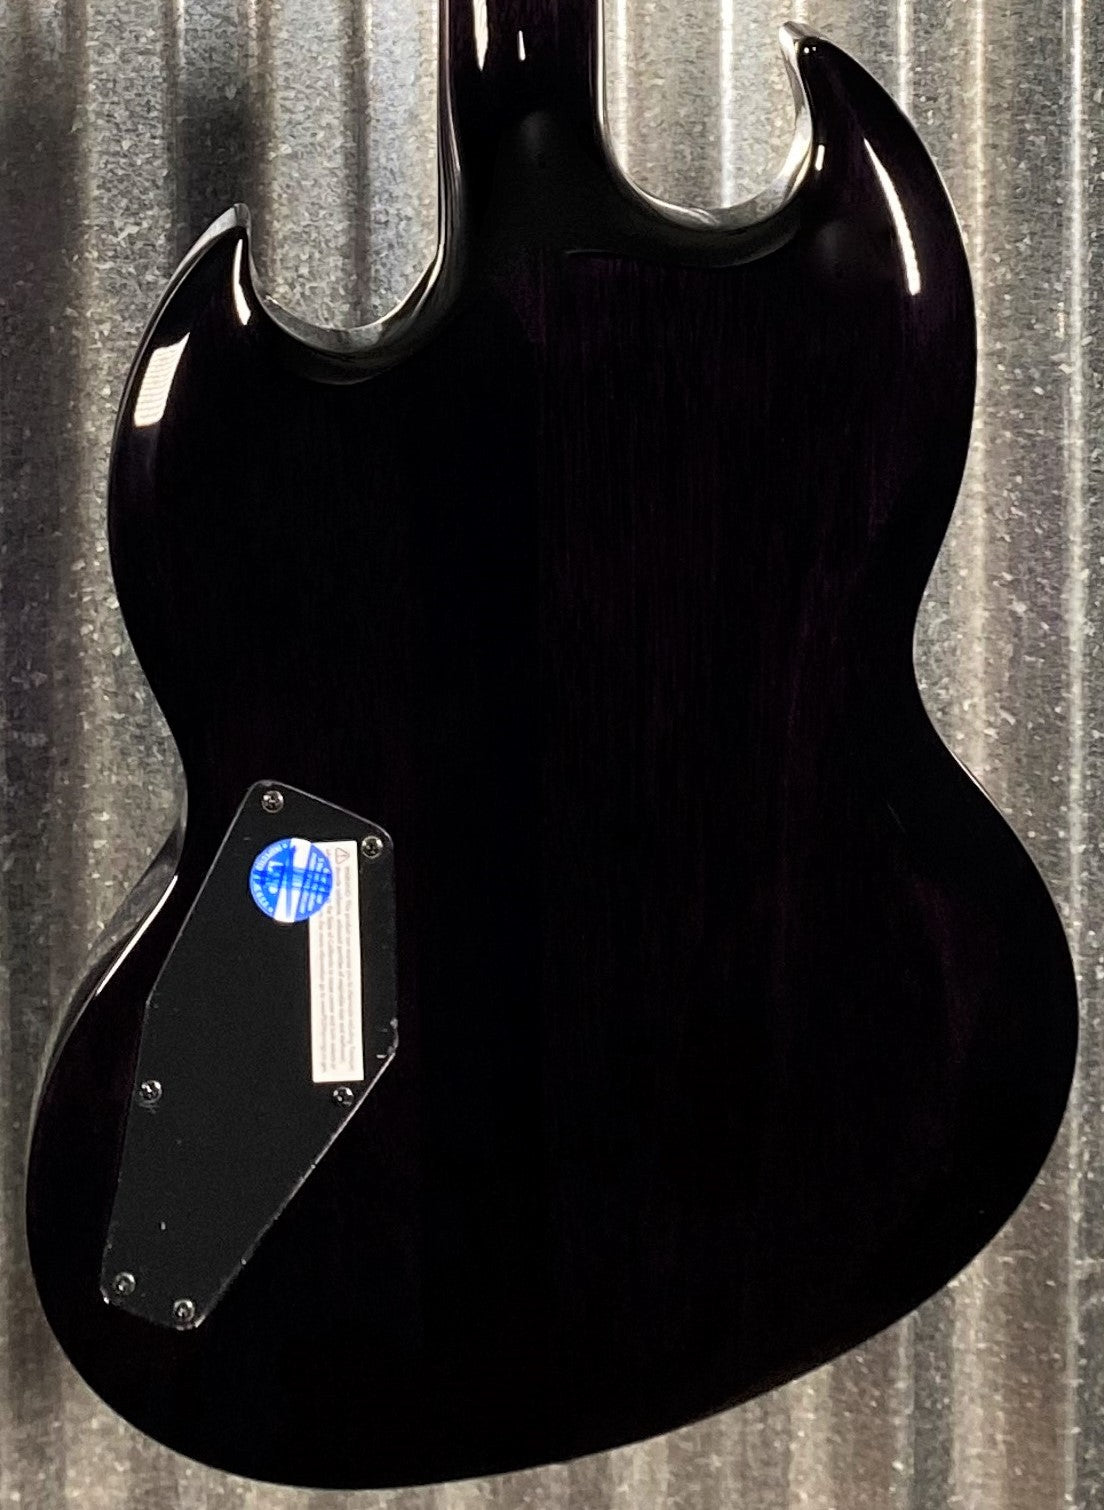 ESP LTD Viper 1000 See Thru Purple Guitar LVIPER1000QMSTPSB #0816